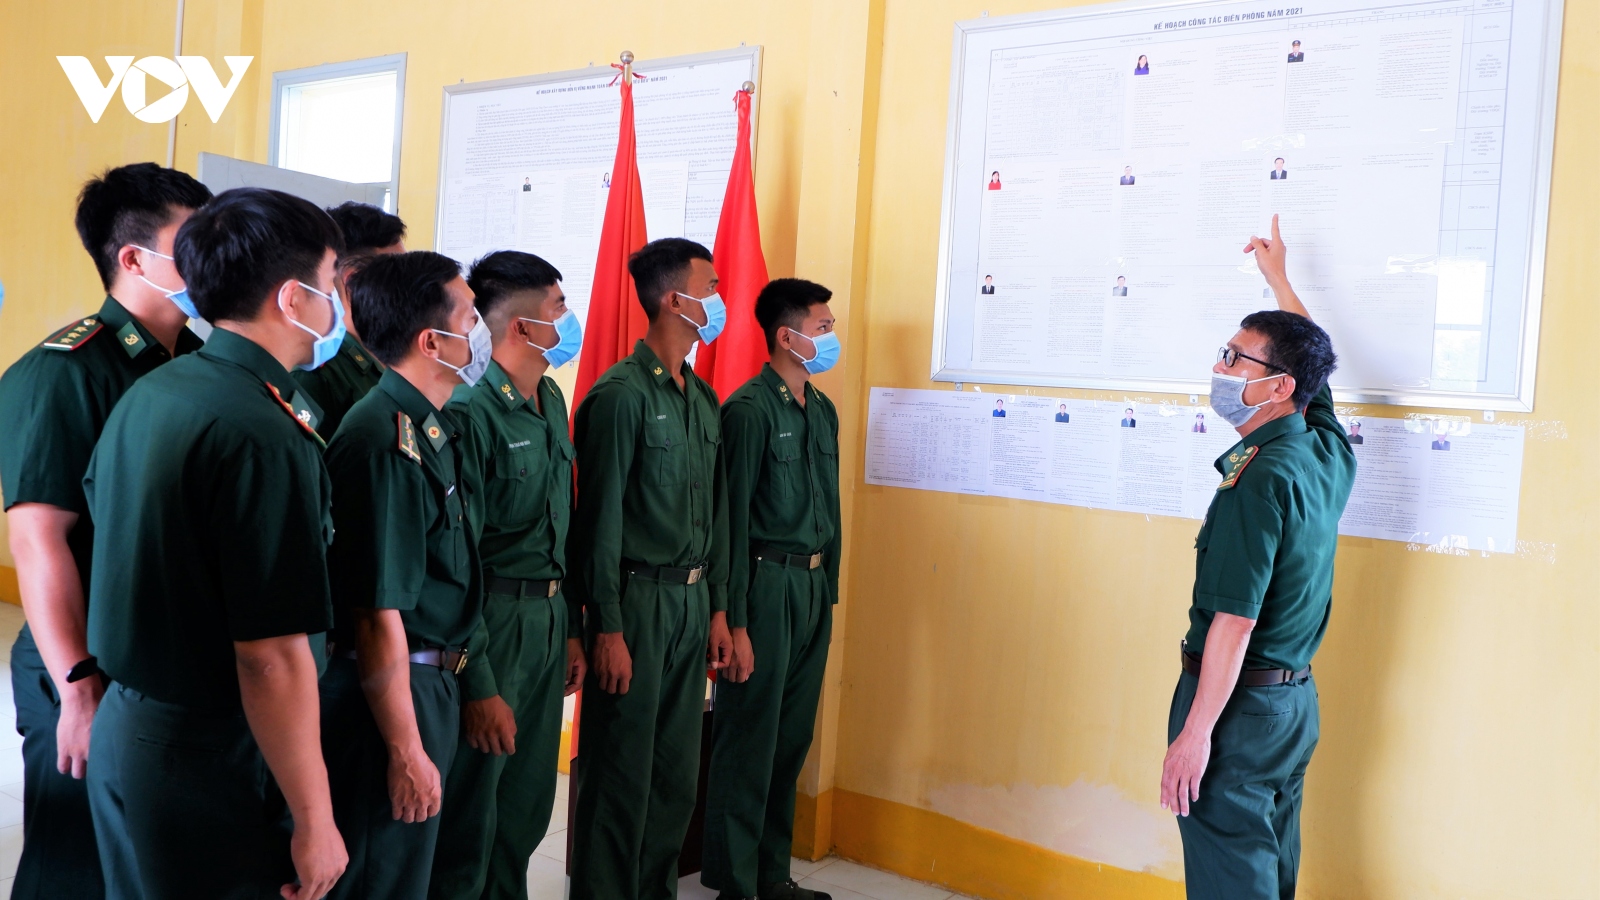 Bộ đội Biên phòng An Giang đảm bảo 100% cán bộ, chiến sỹ thực hiện quyền công dân